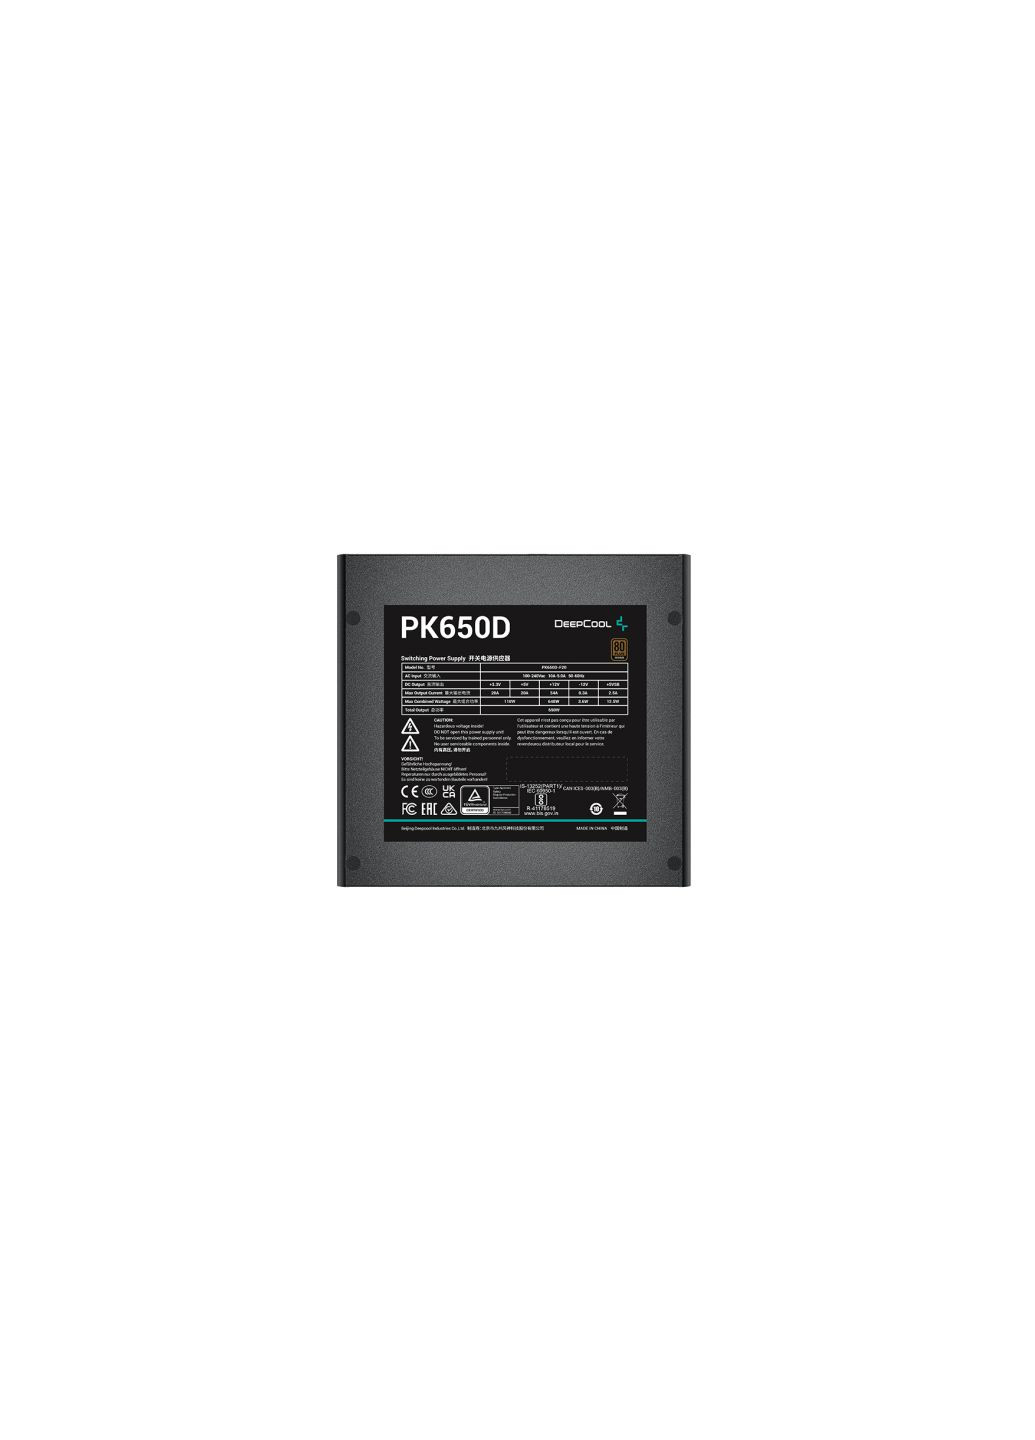 Блок питания (RPK650D-FA0B-EU) DeepCool 650w pk650d (275103185)